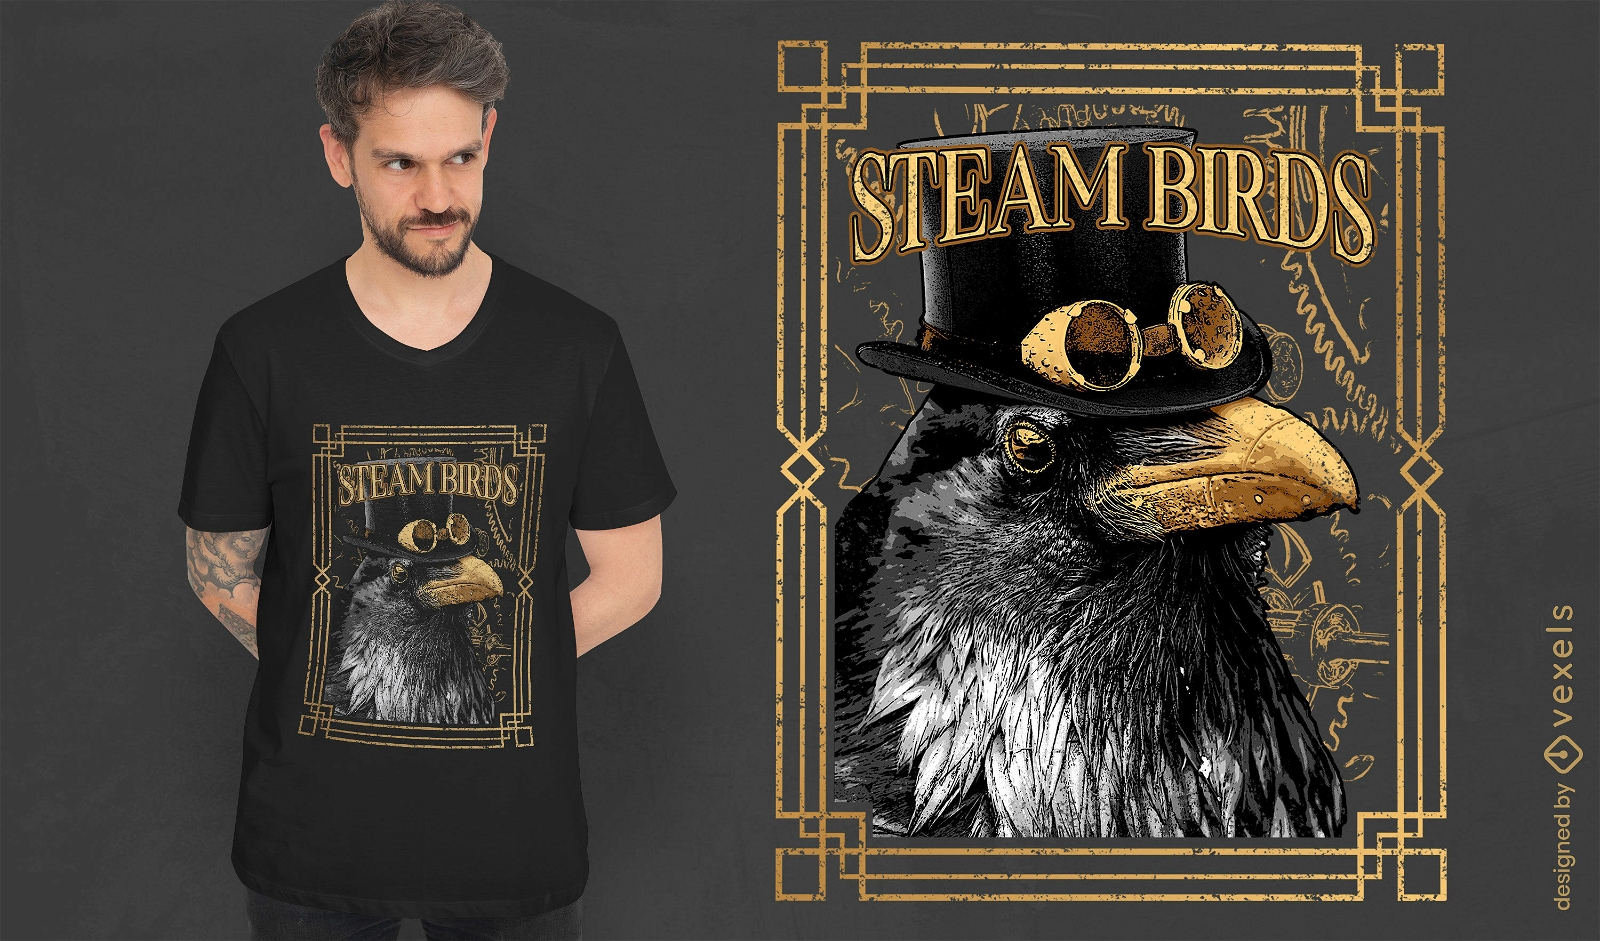 P?ssaro corvo steampunk com camiseta de chap?u psd